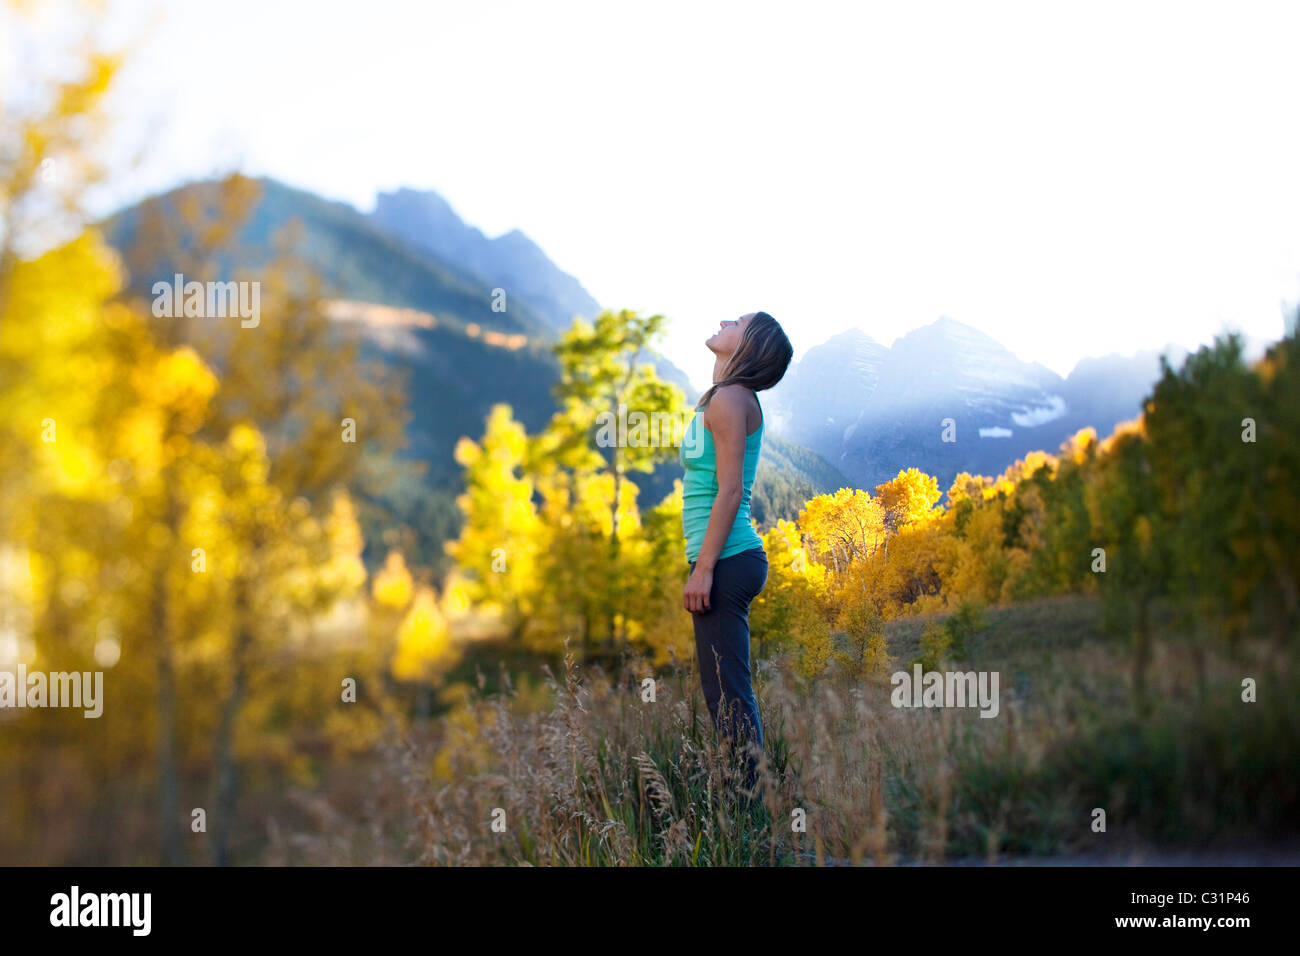 Una joven mujer respira profundamente rodeado por bosques de oro y picos nevados. Foto de stock